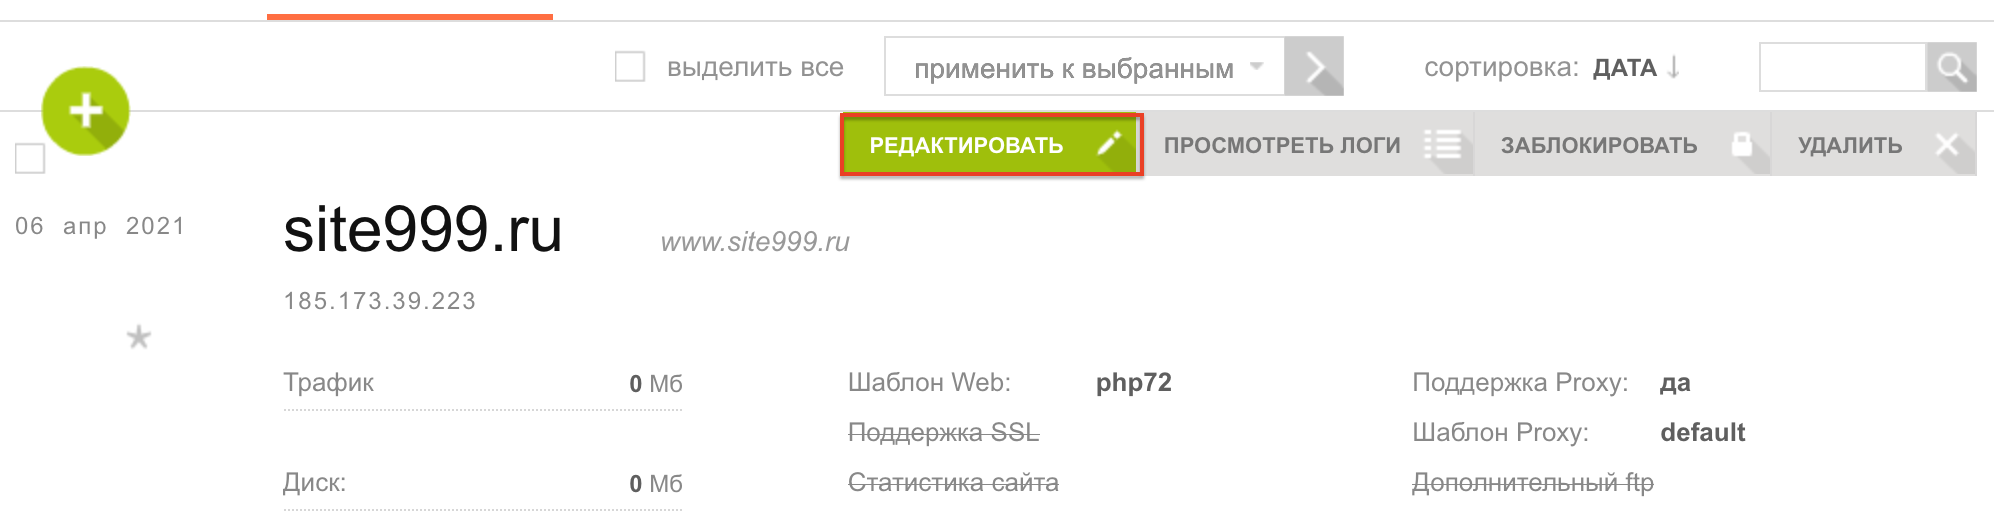 kak-ispolzovat-server-s-predustanovlennoy-vestacp-dlya-razmeshcheniya-sayta-3.png